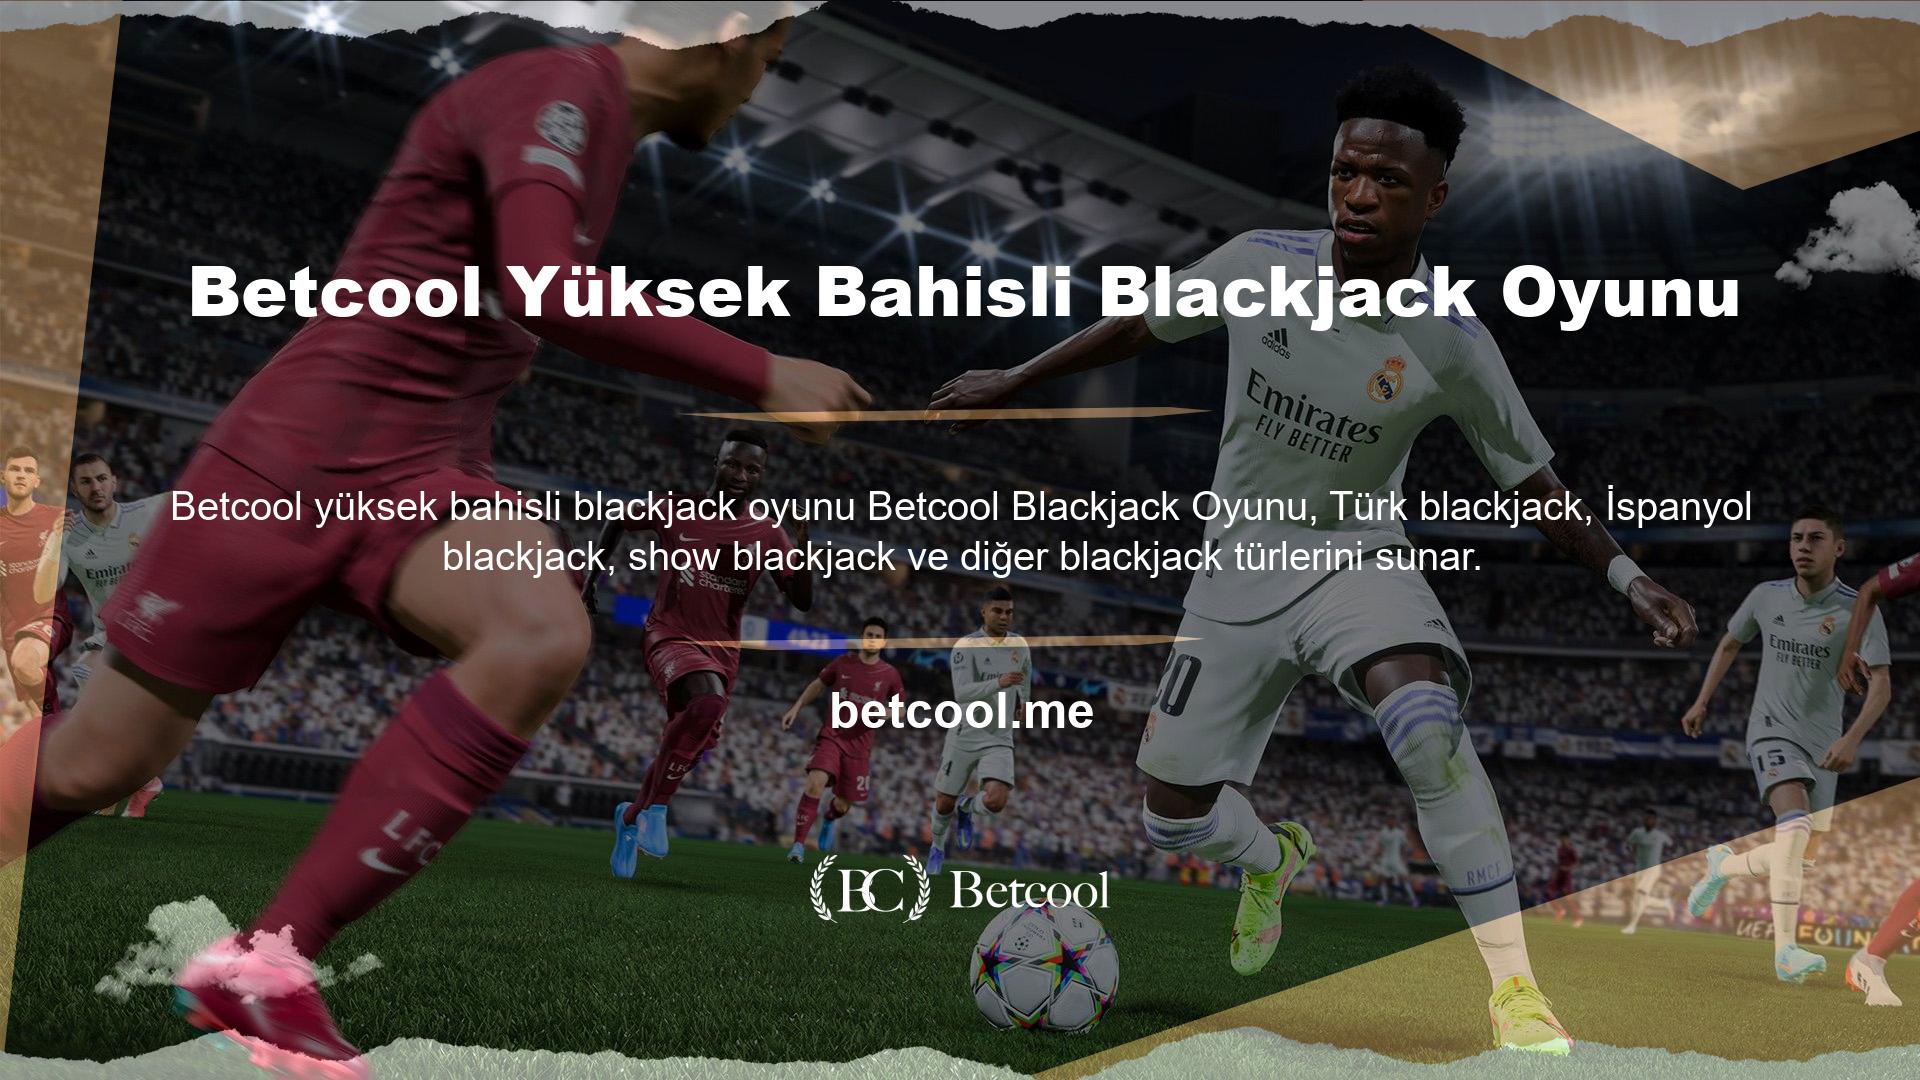 Oyunun kuralları blackjack türüne göre değişir, ancak Betcool web sitesinde sunulan bahis boyutları aynı kalır